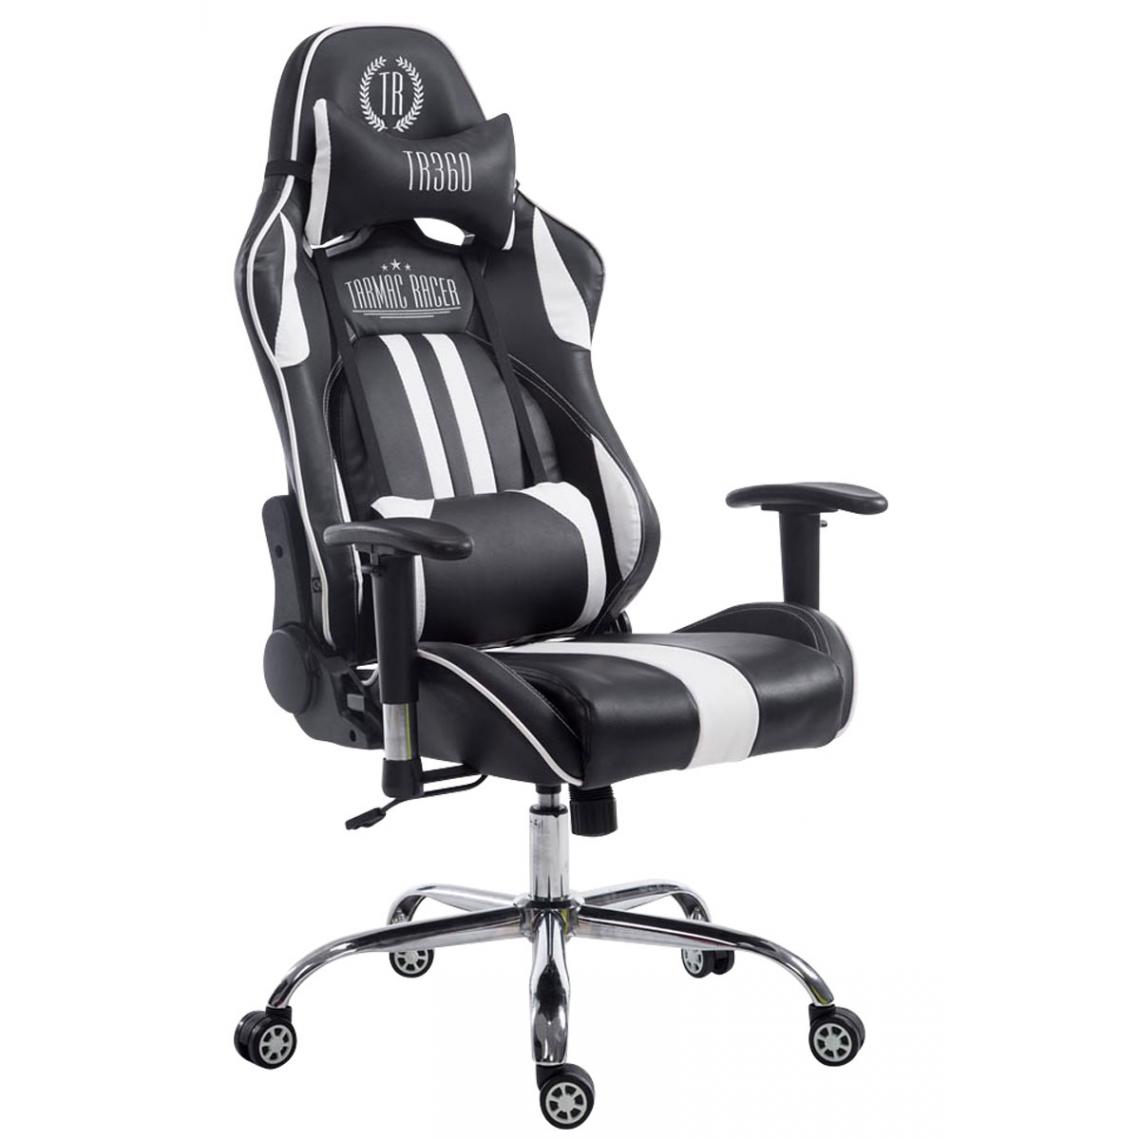 Icaverne - Superbe Chaise de bureau categorie Luanda Limit V2 cuir synthétique sans repose-pieds couleur noir et blanc - Chaises